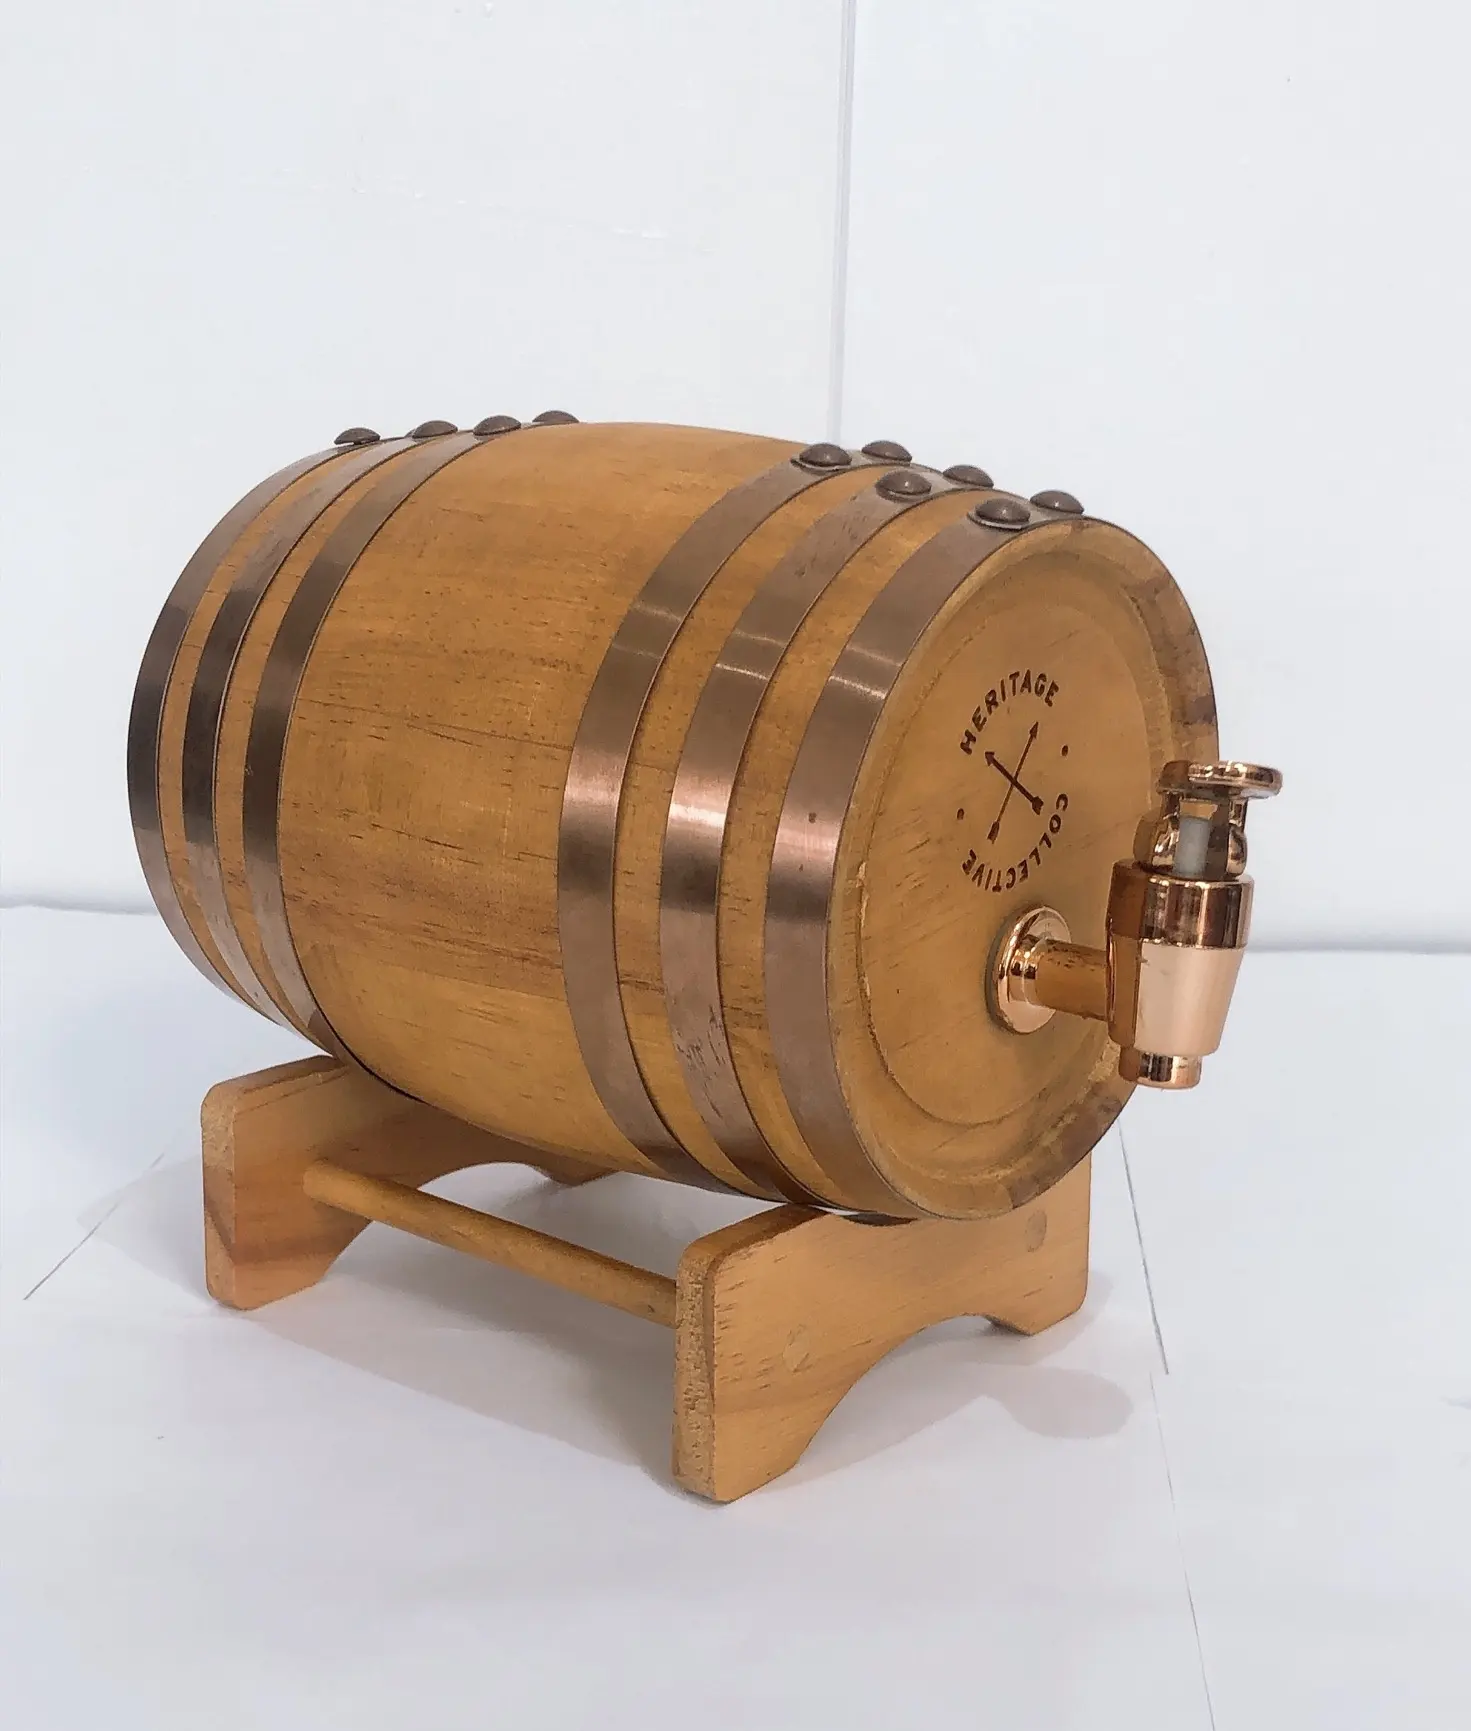 Manufacturers direct red wine barrels home decoration barrels custom oak barrels